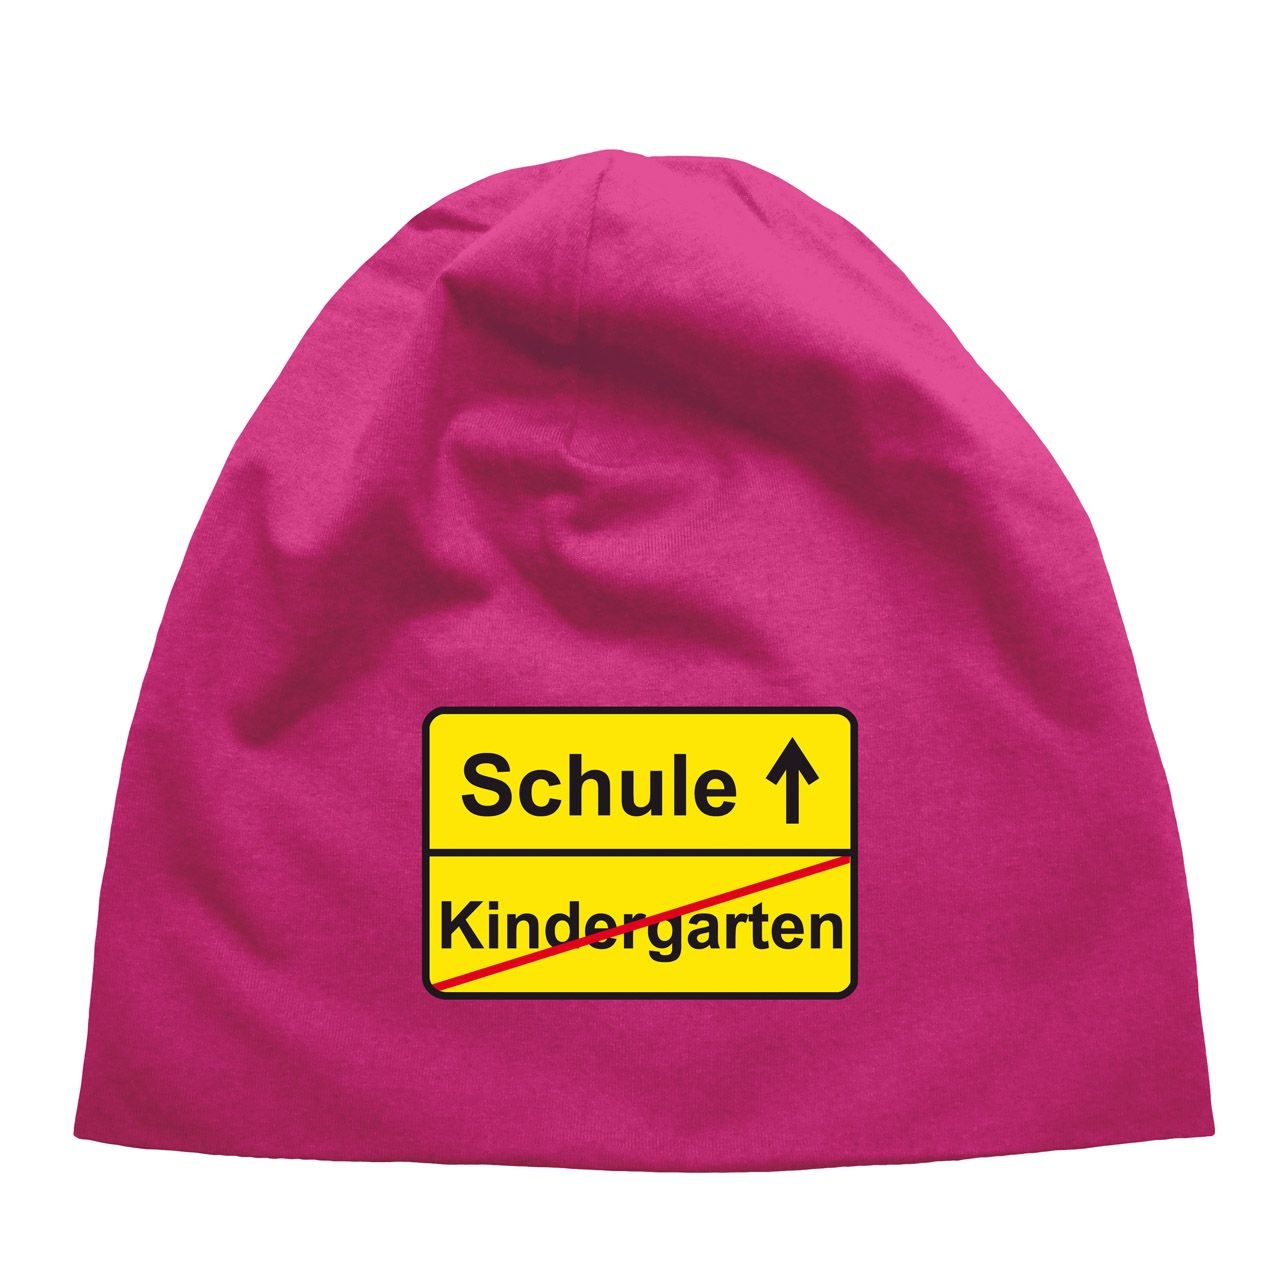 Kindergarten Schule Kinder Beanie pink